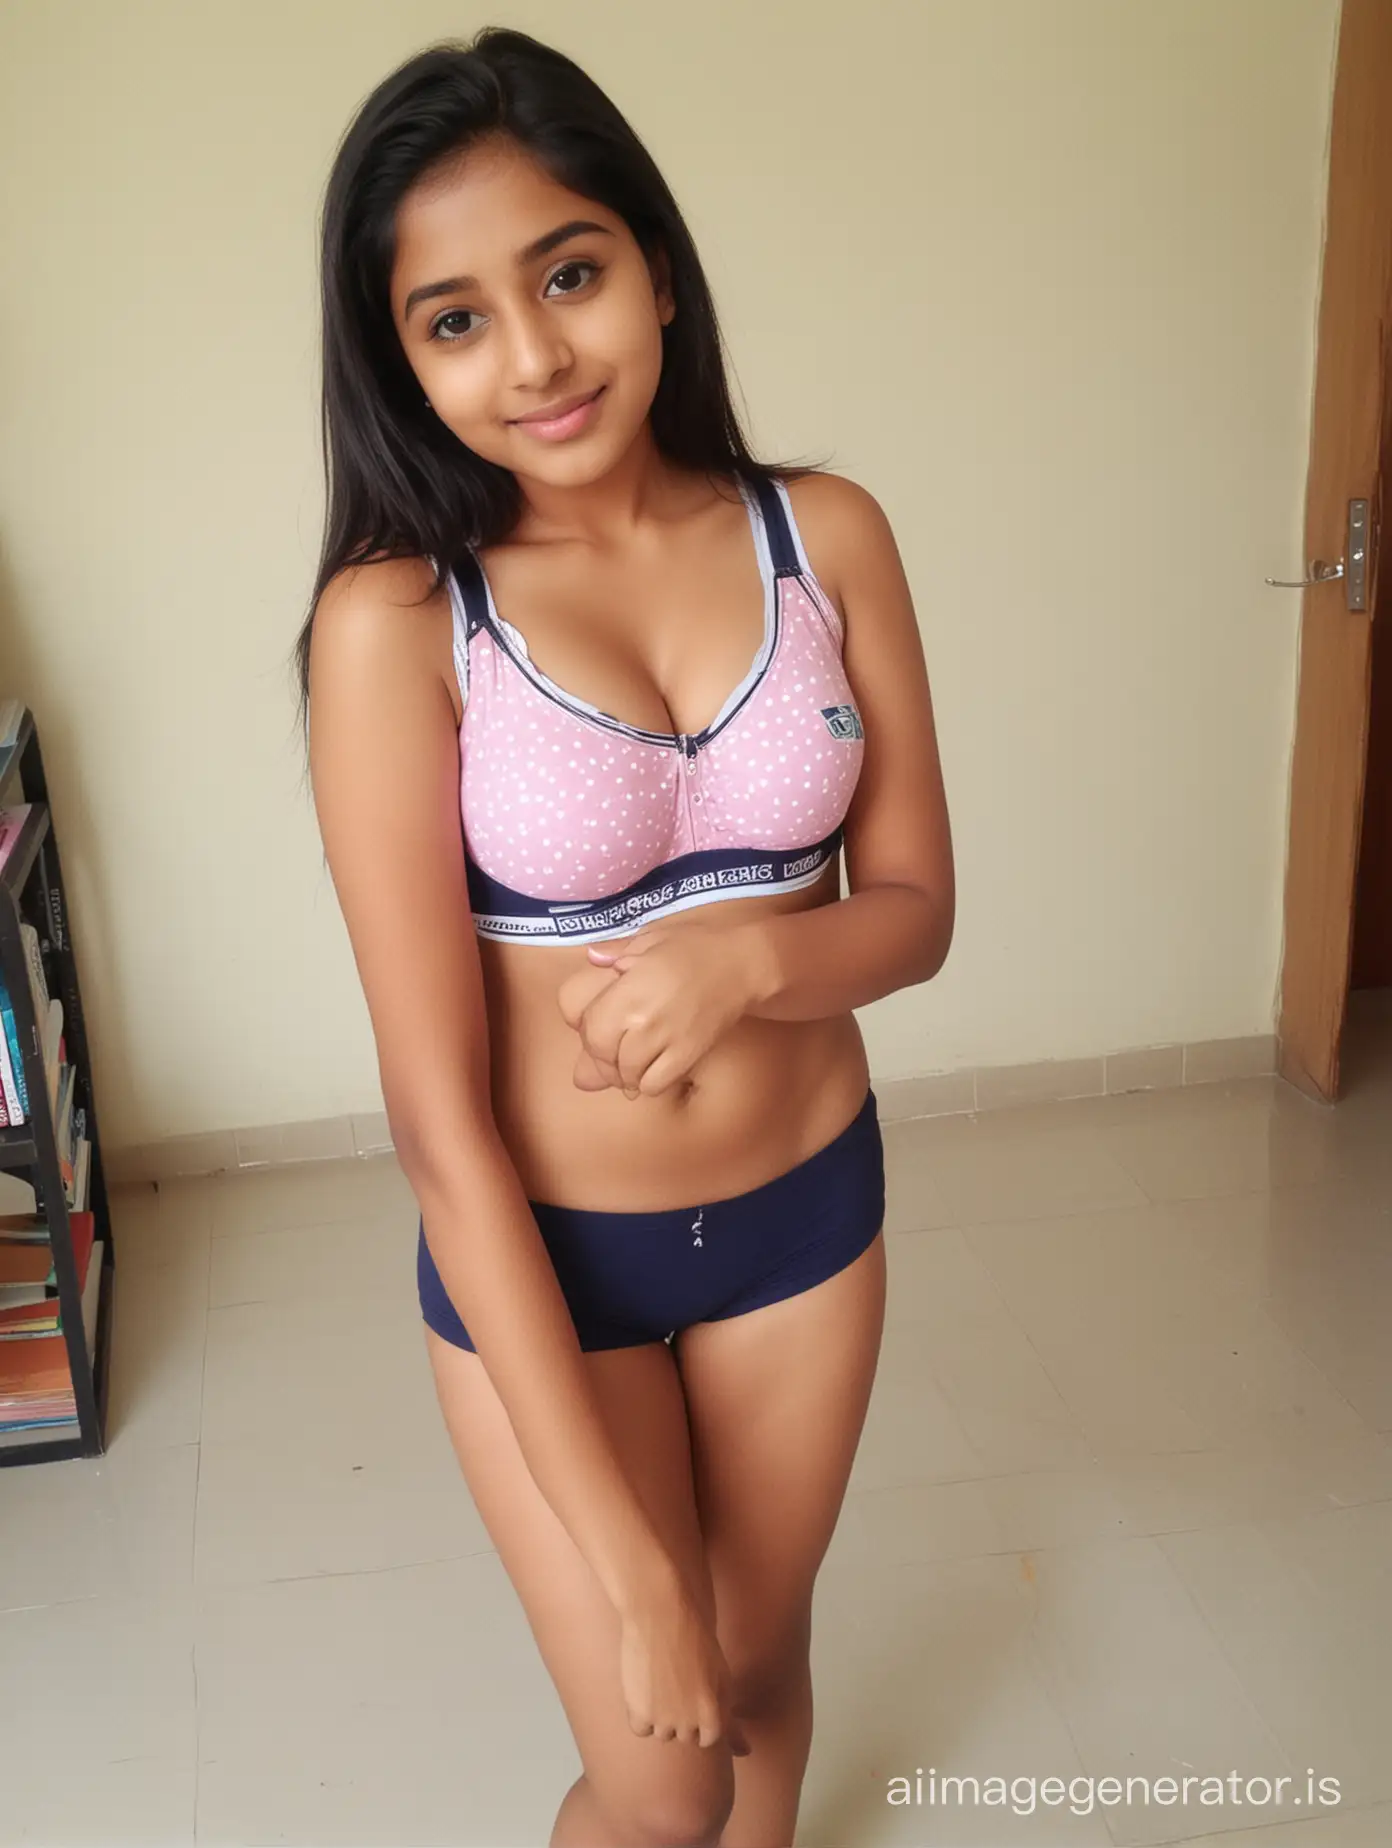 cute indian schoolgirl in bra